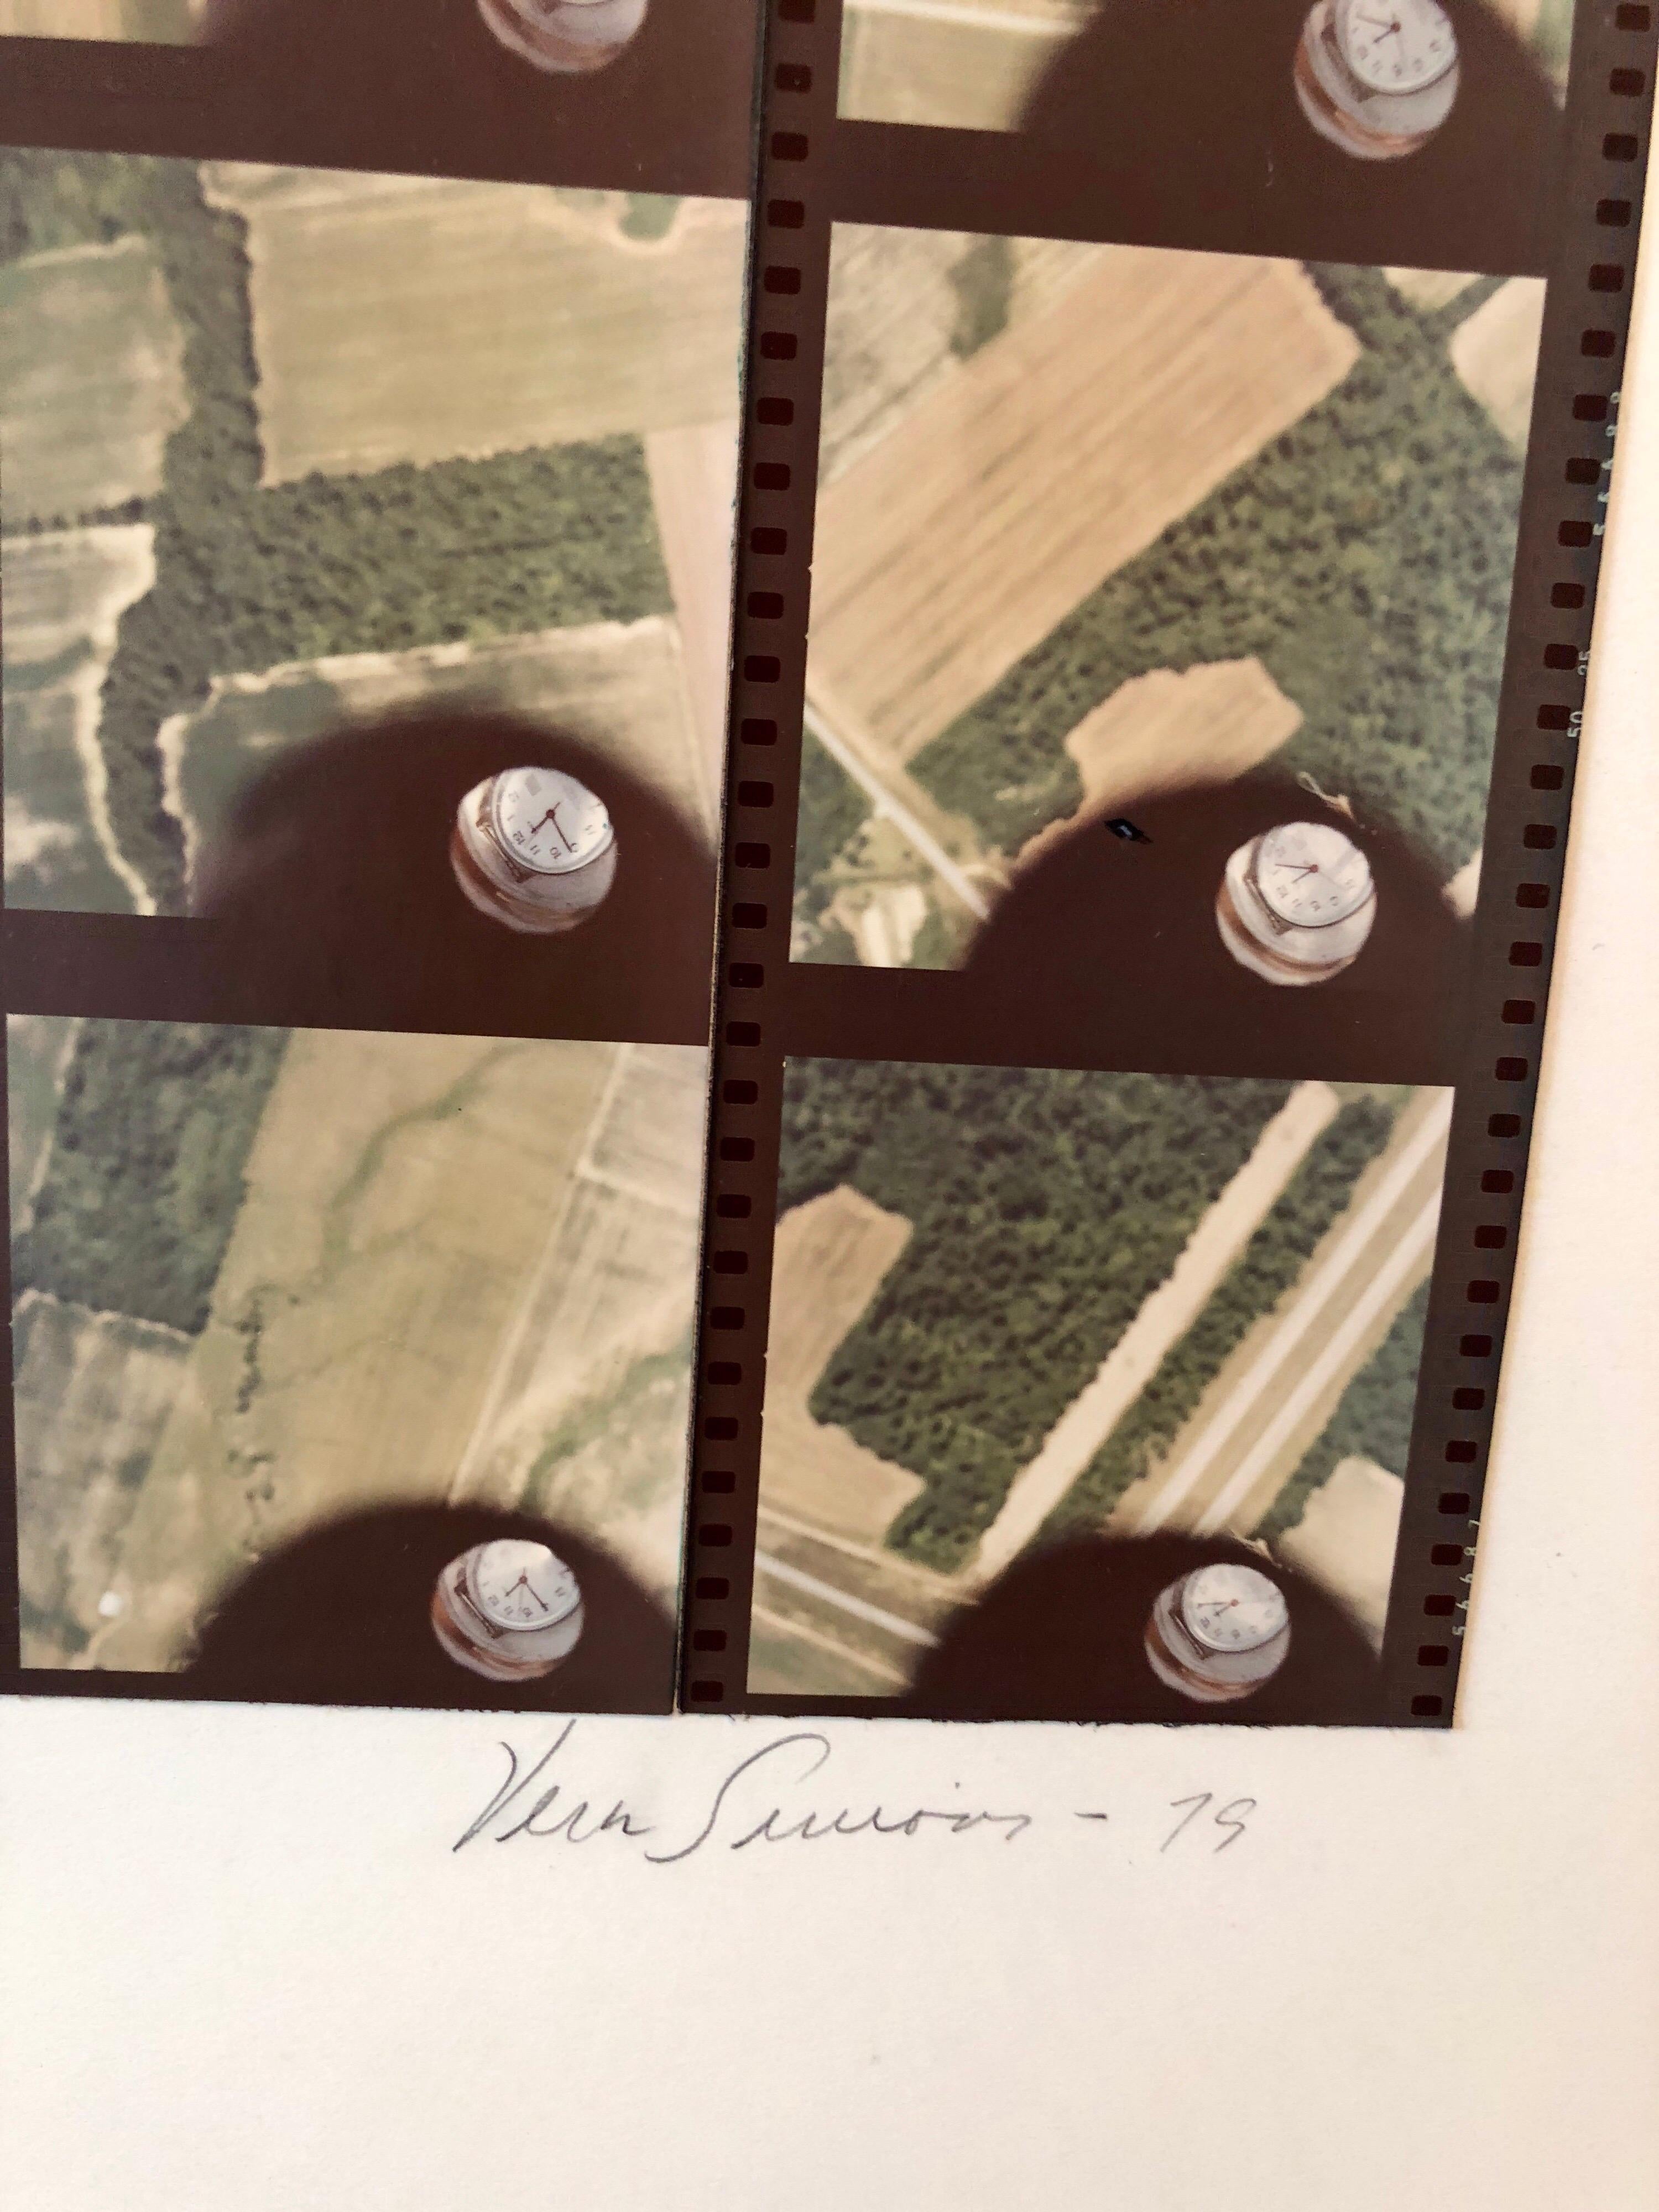 1979 Quadratische Zeit Indiana, Foto Mosaik-Collage Luftfahrtfotografie, weibliche Aviator – Photograph von Vera Simons